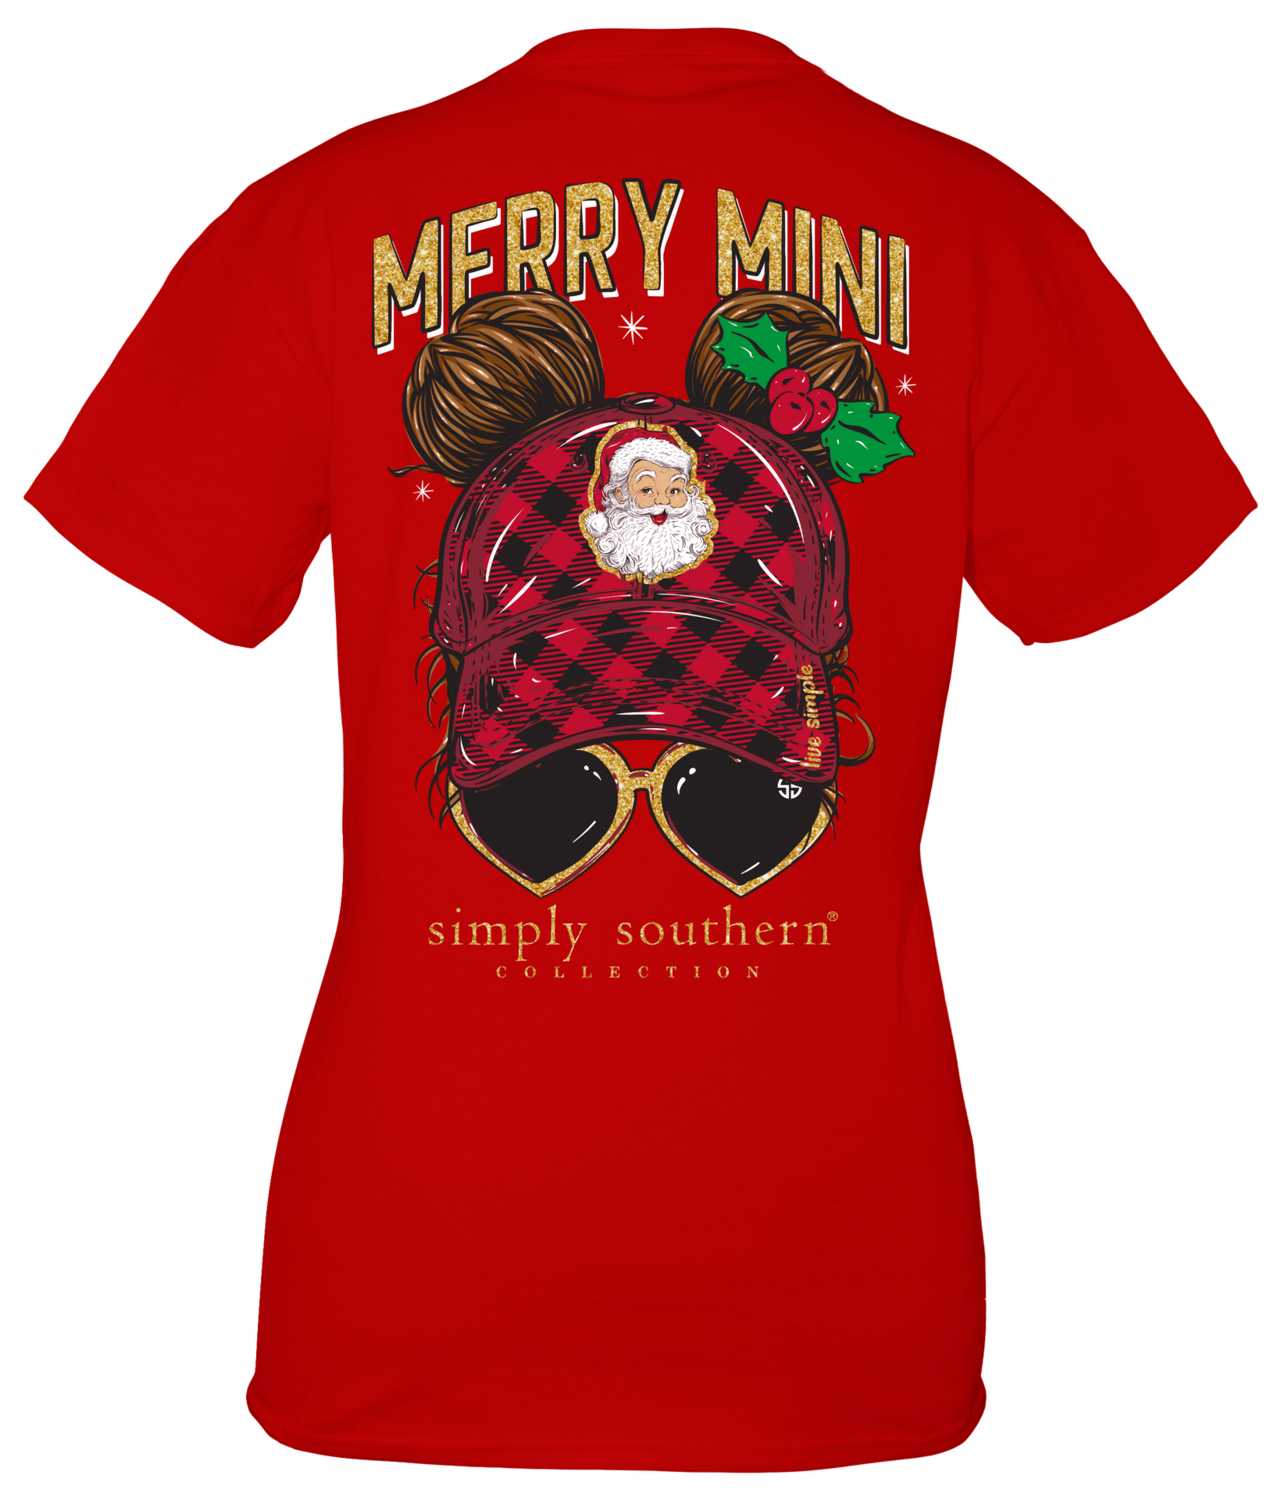 Youth SS Shirt - Merry Mini